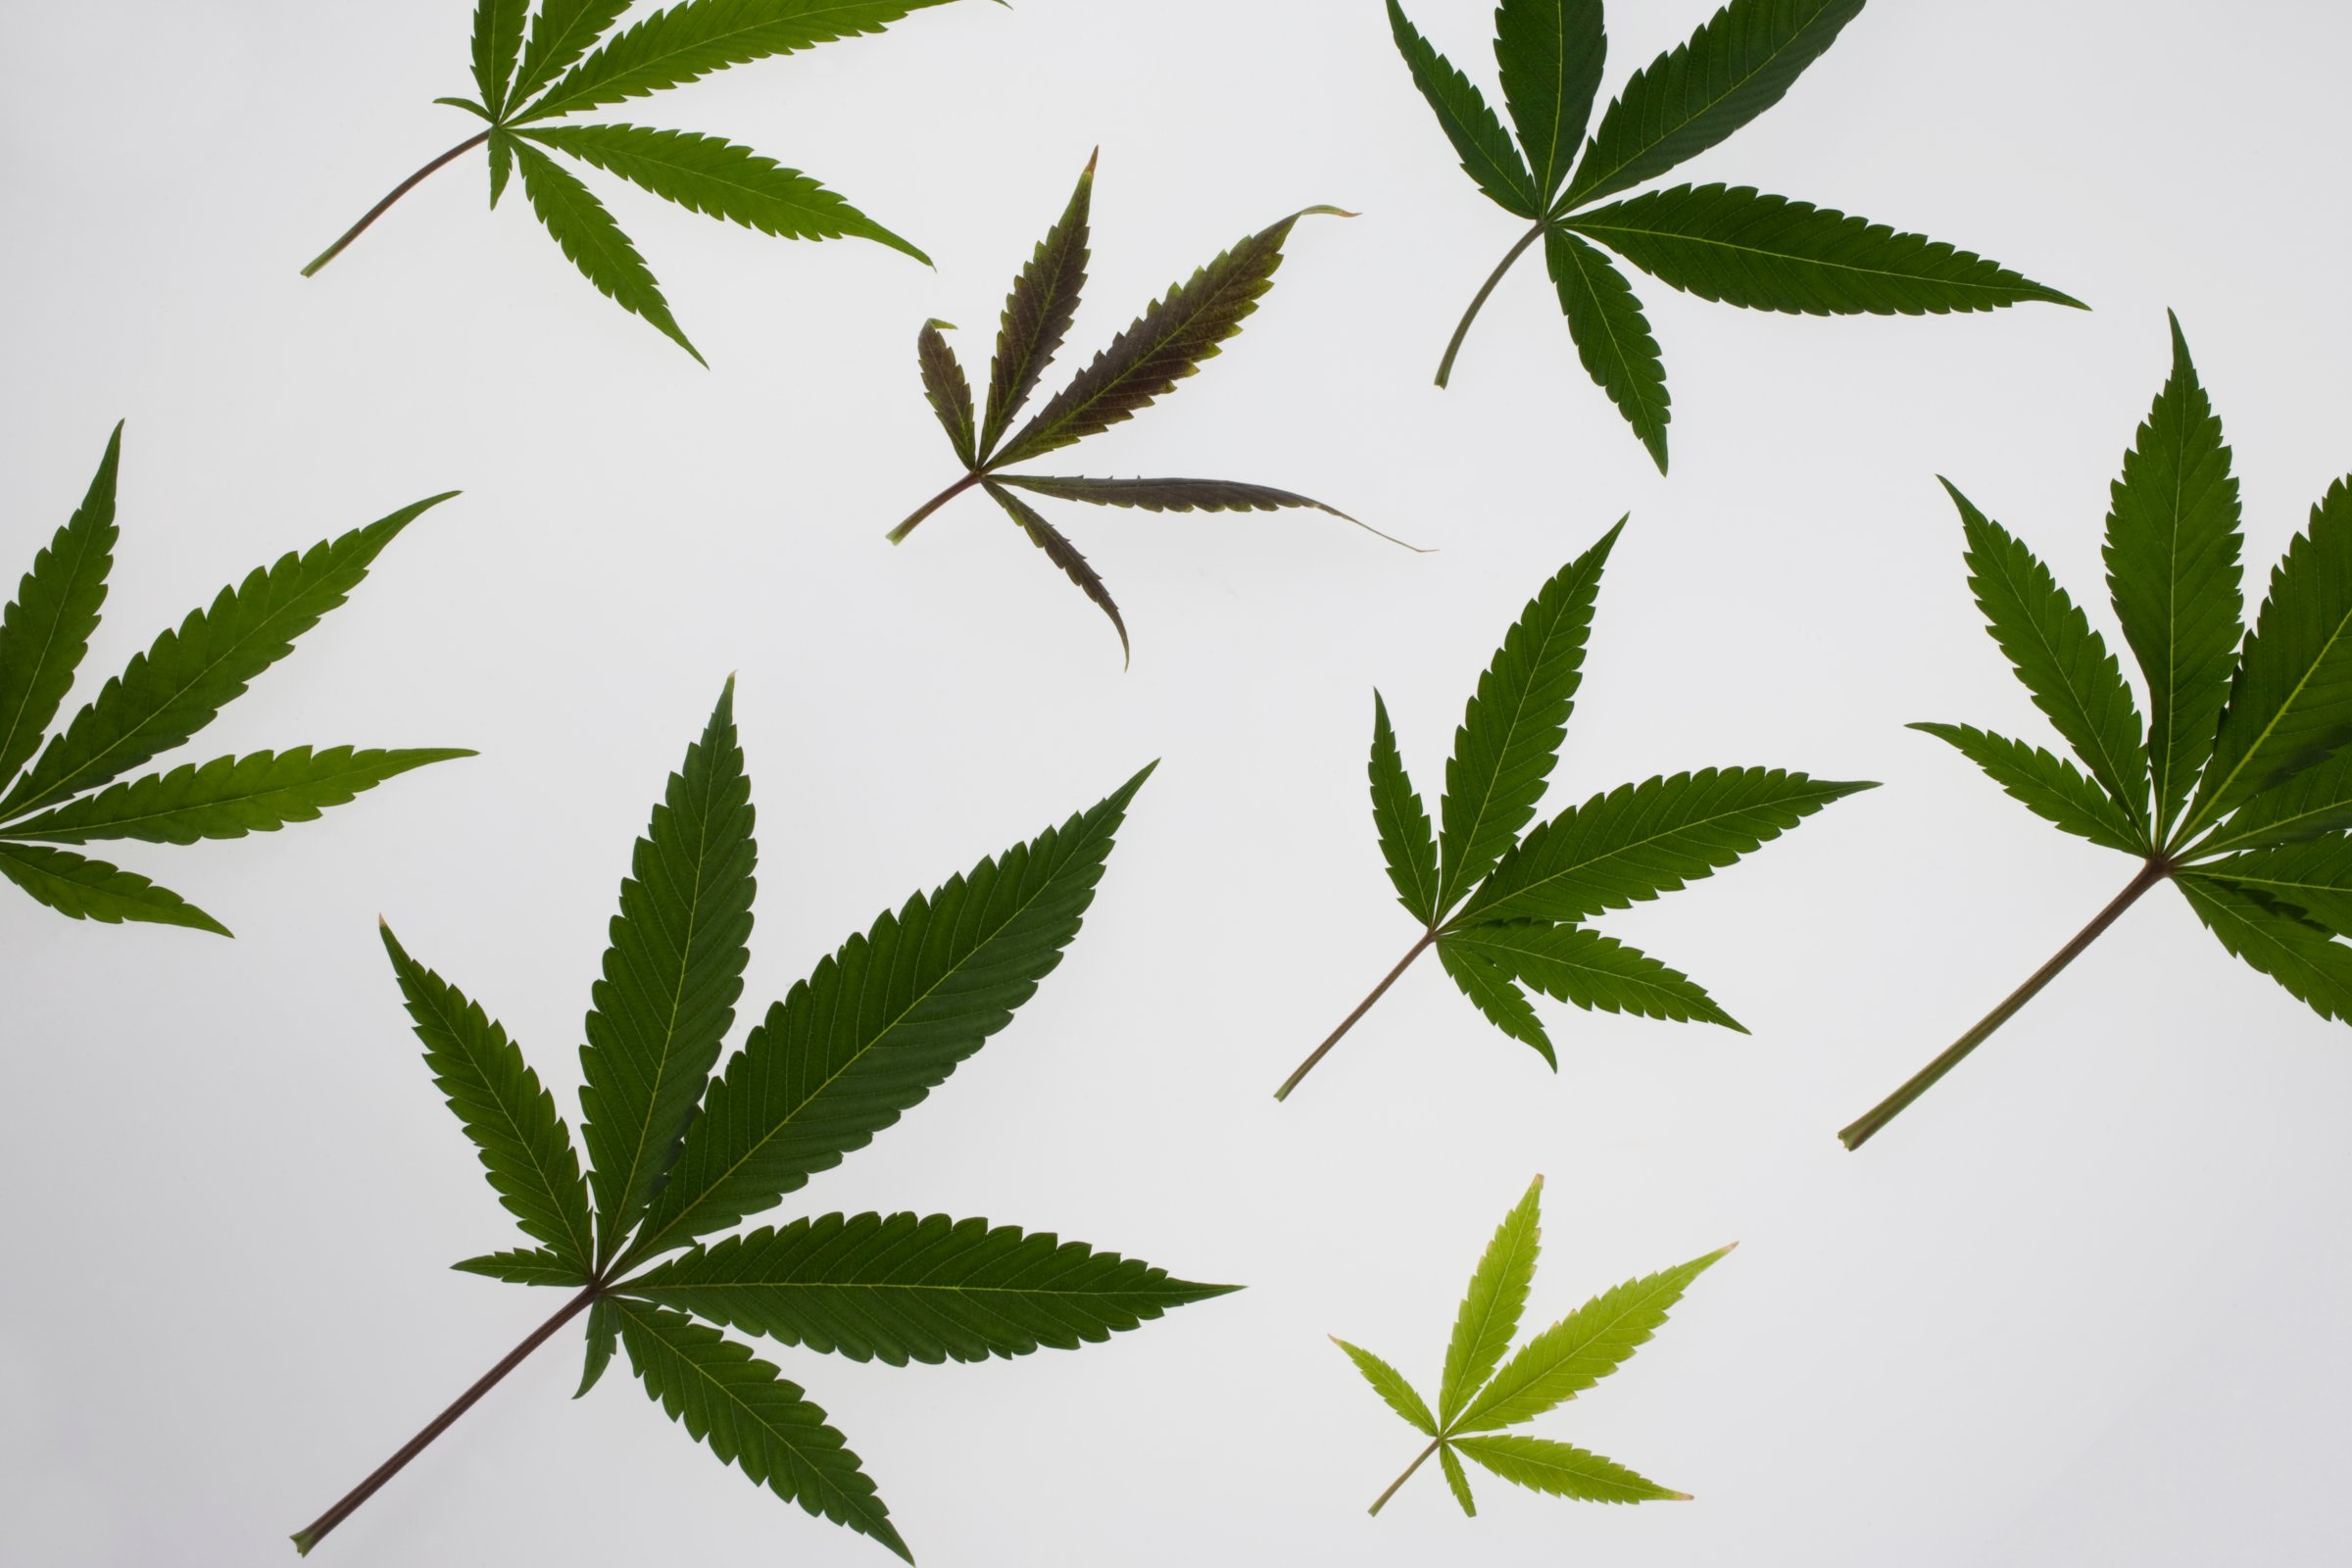 Multiple sized marijuana leaves